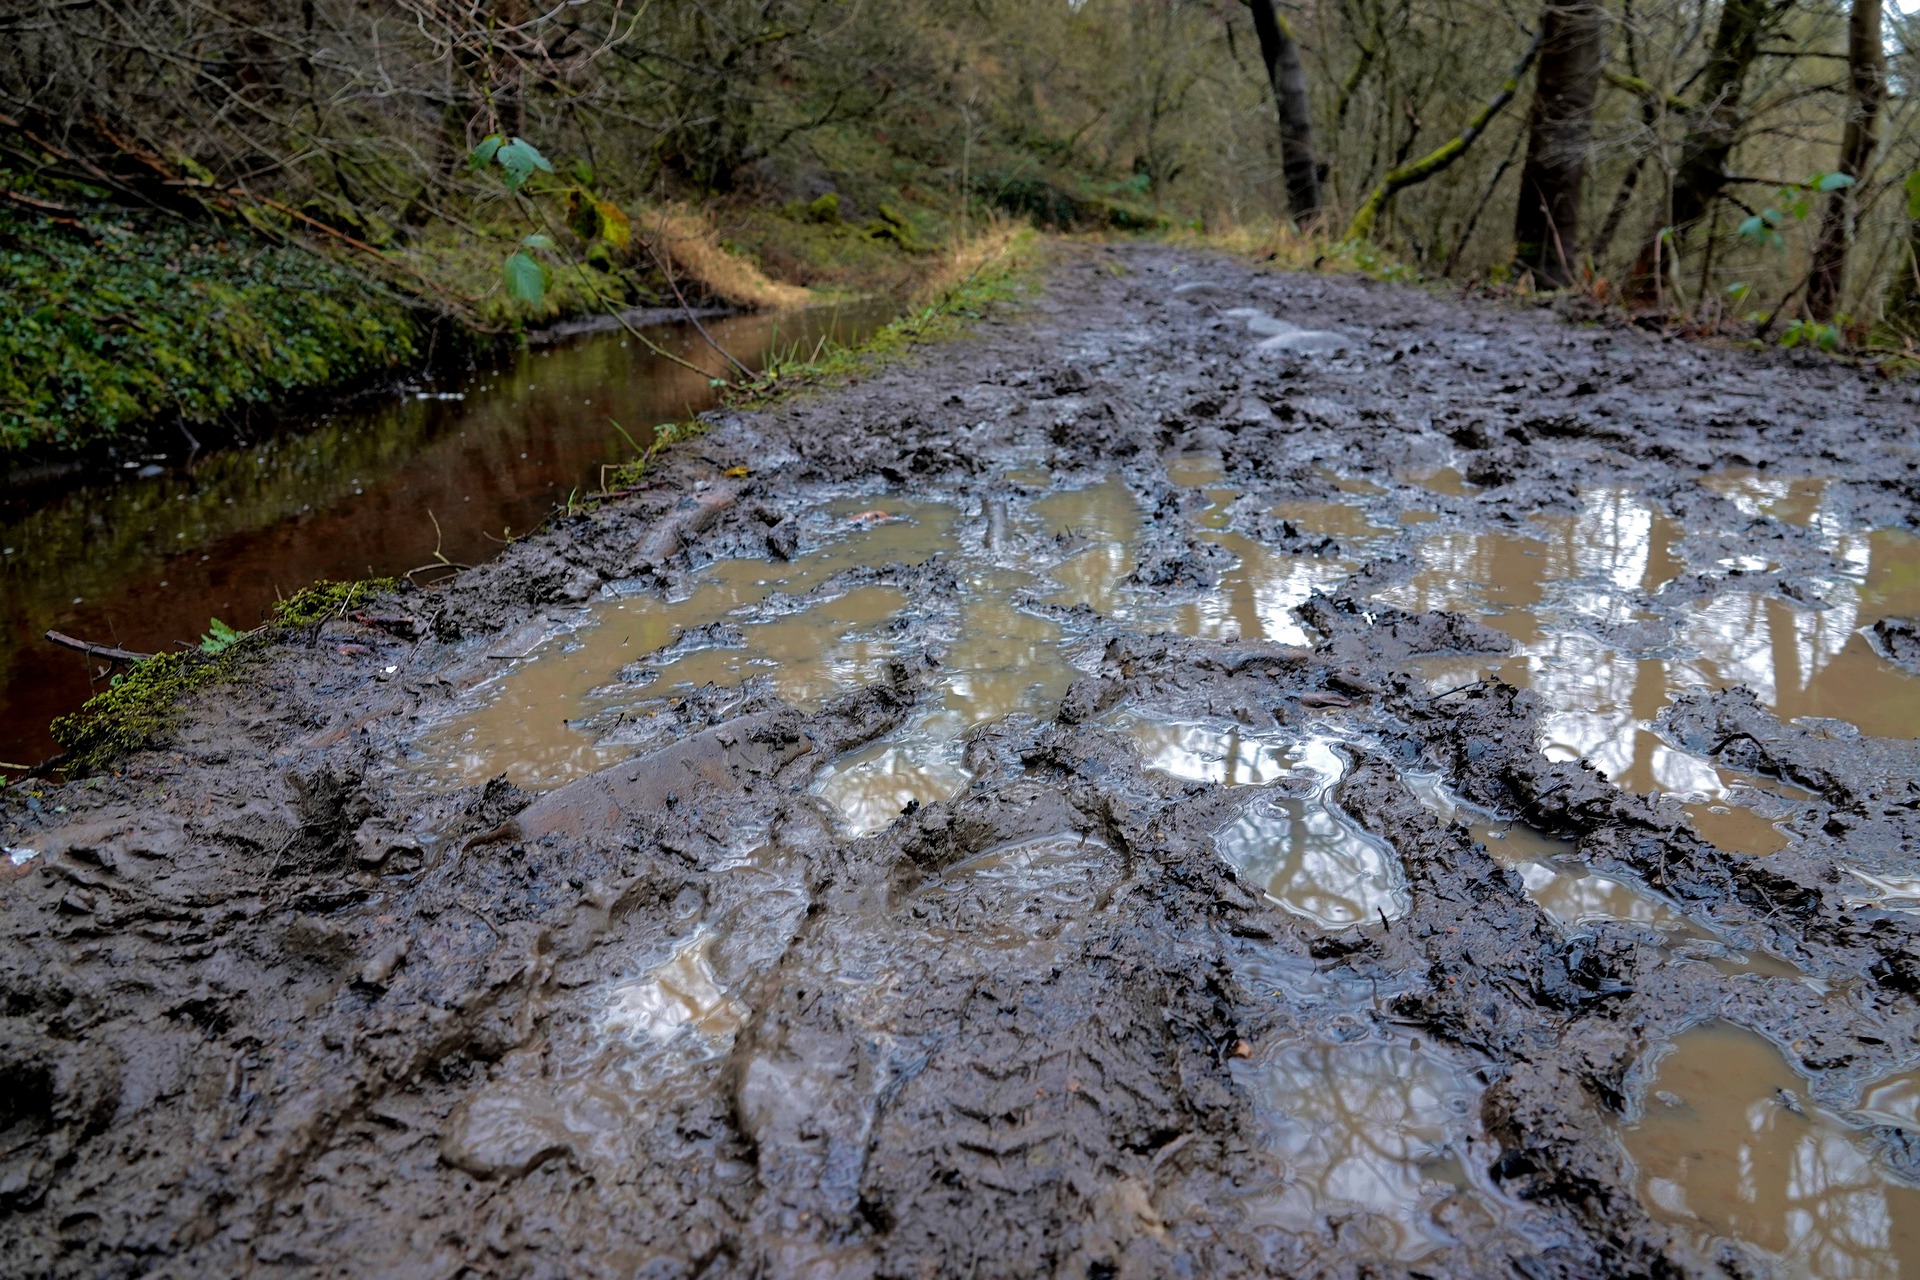 A muddy trail